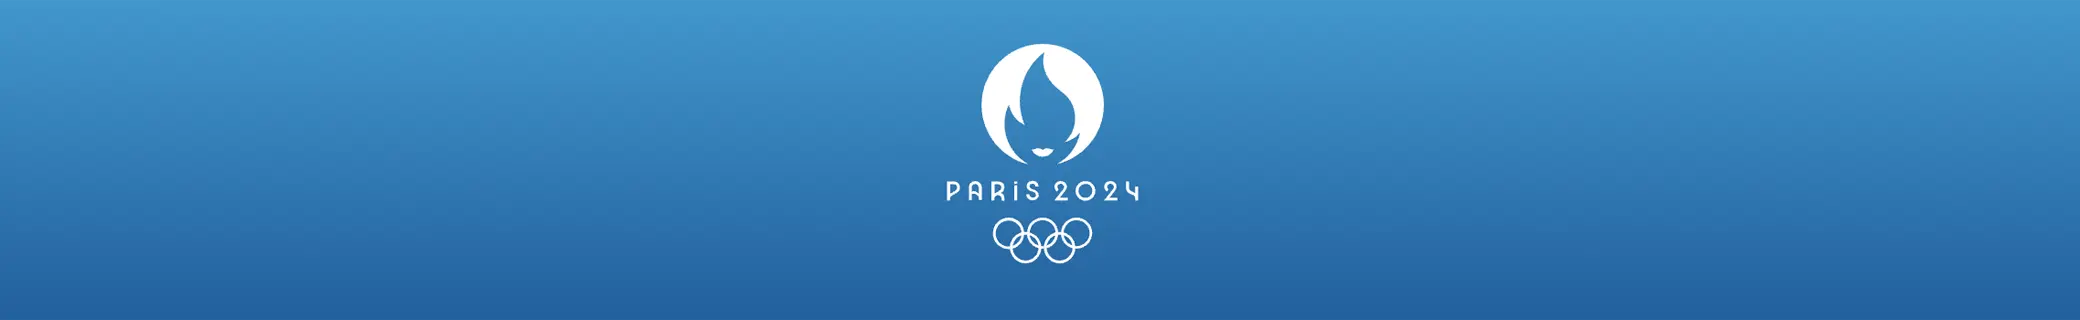 Danske deltagere i OL 2024